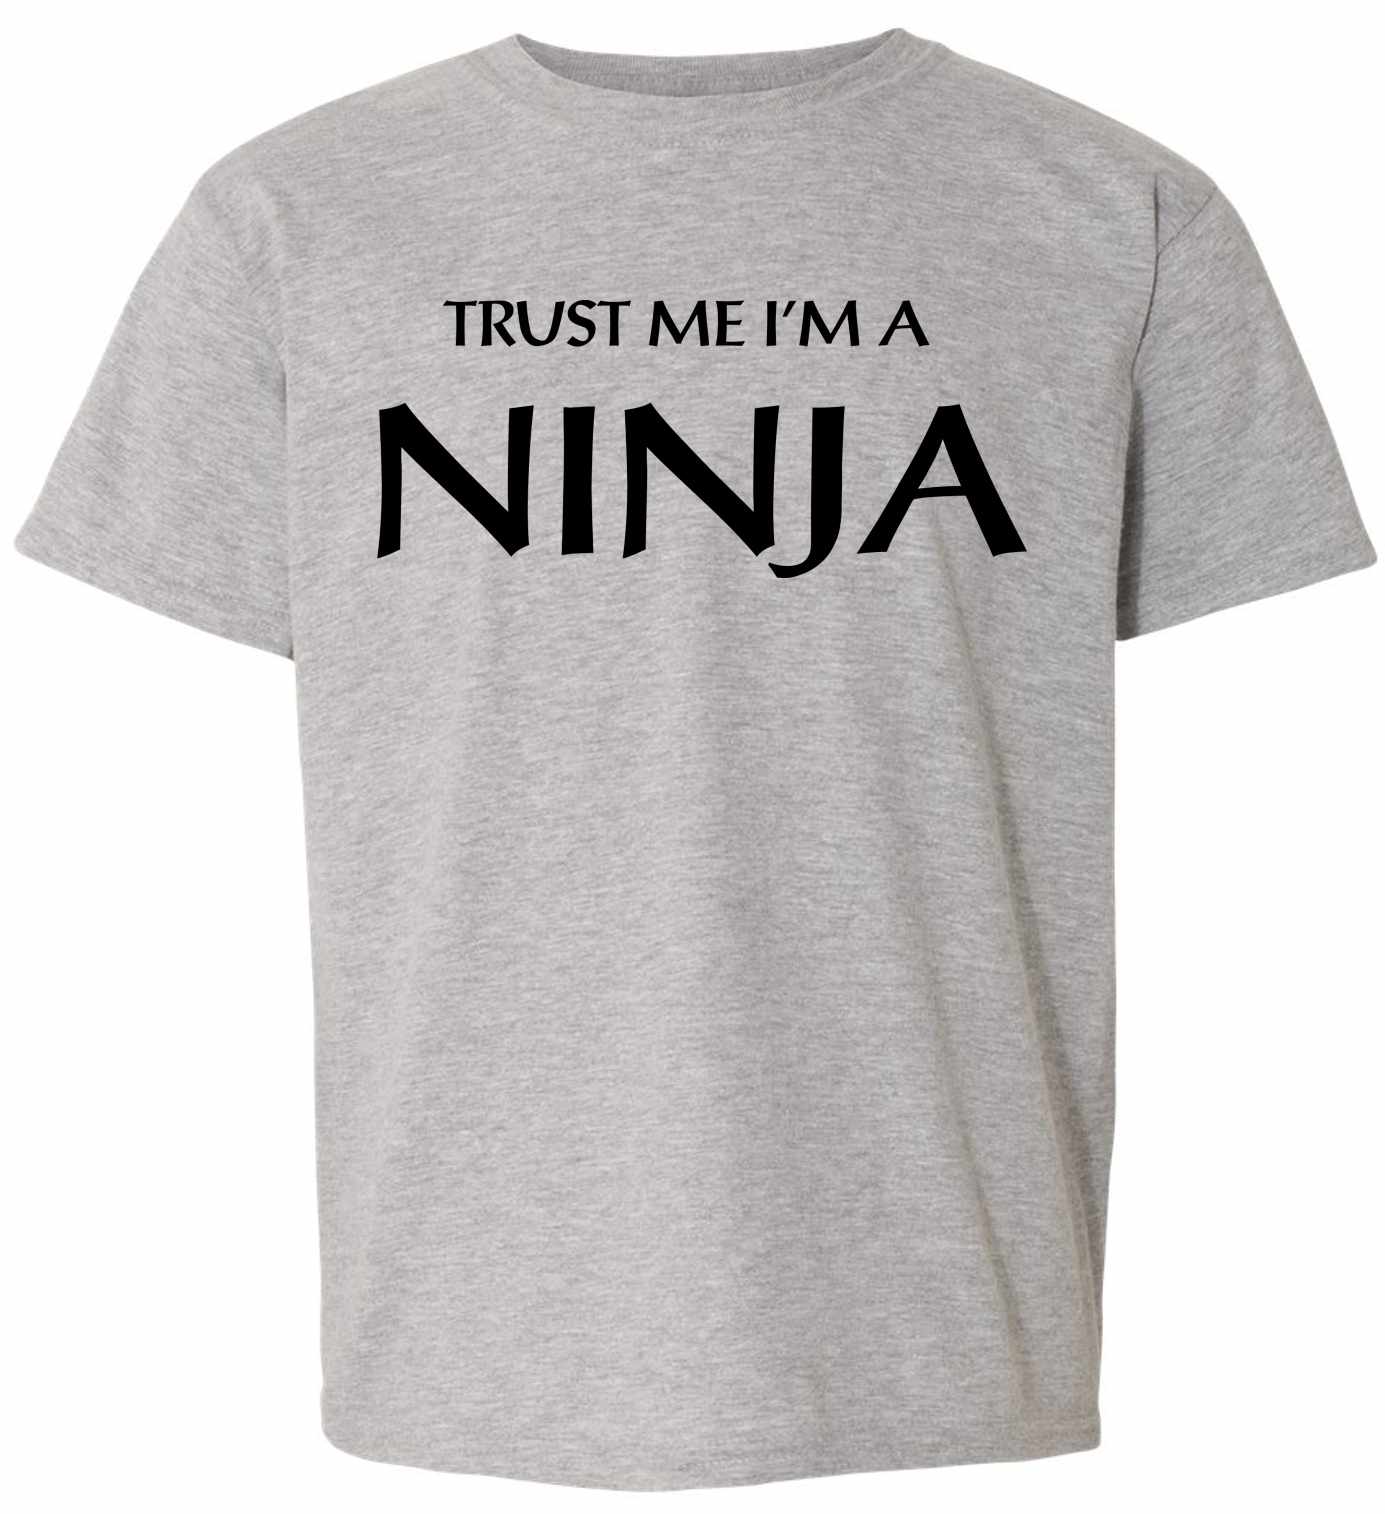 Trust Me I'm a NINJA on Kids T-Shirt (#774-201)